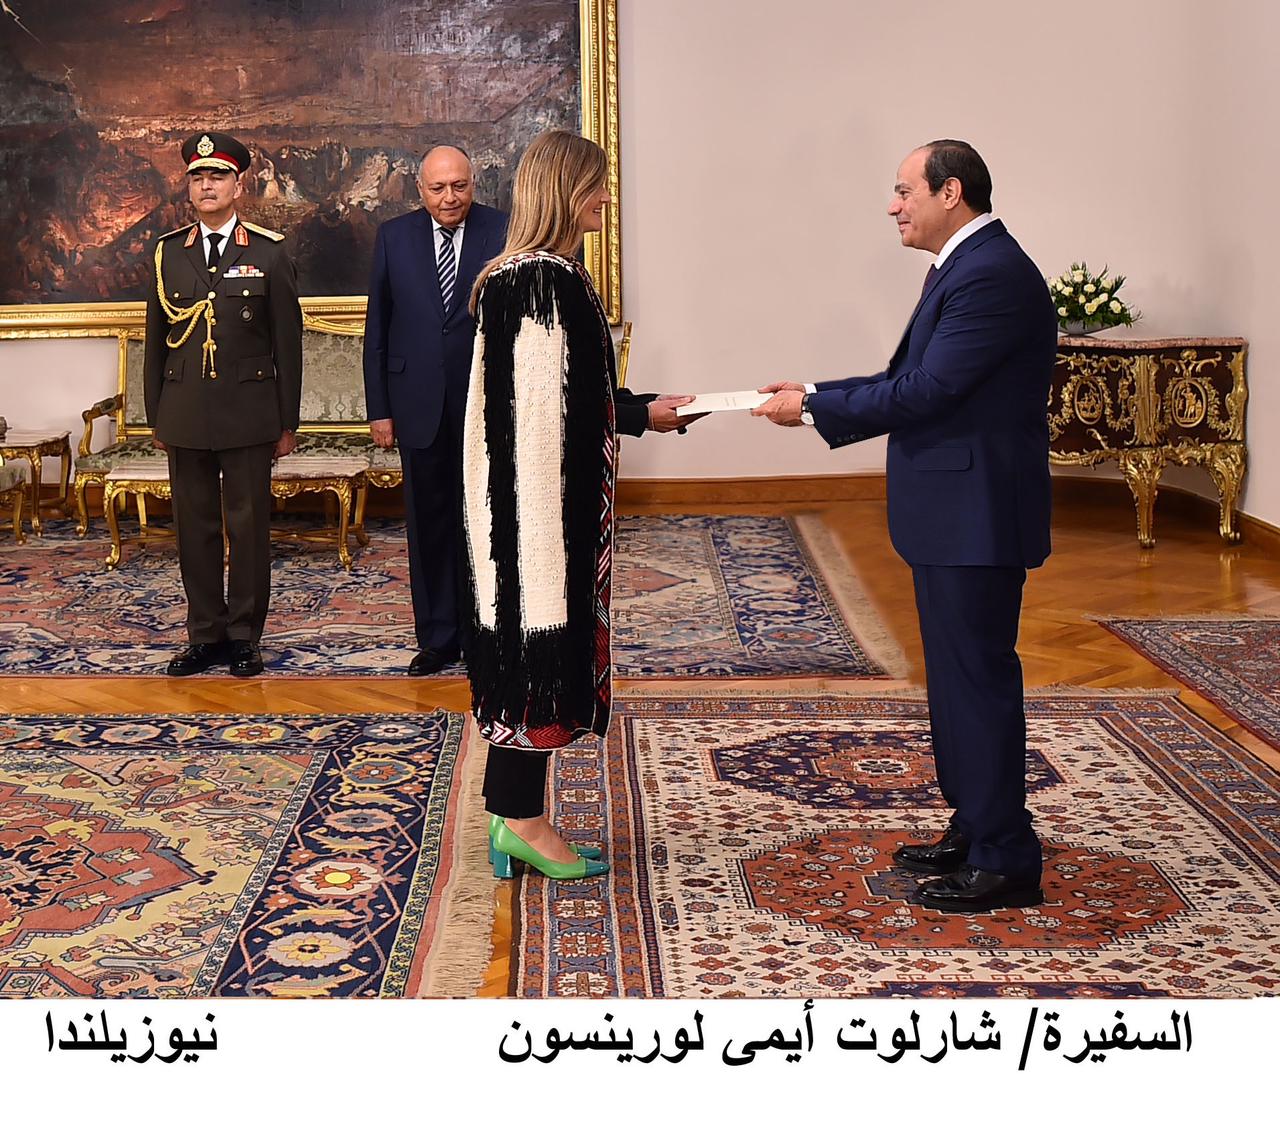  الرئيس السيسي يتسلم أوراق اعتماد السفراء الجدد